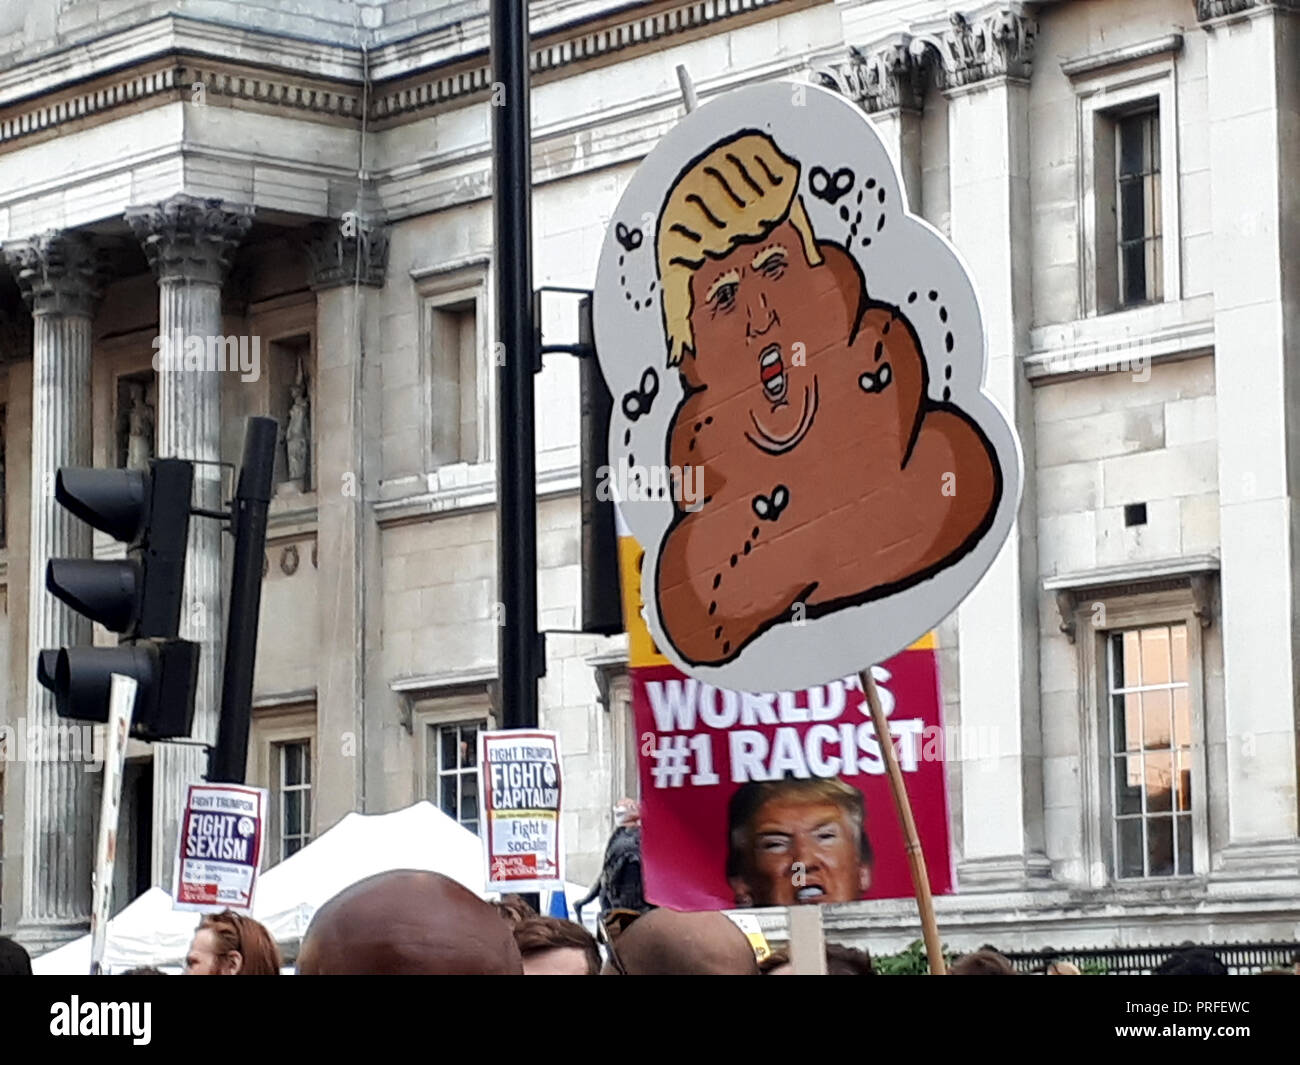 Londra, UK, 13 luglio 2018. 100.000 persone protestano contro la visita del Presidente statunitense Donald Trump. I manifestanti si raccolgono in Trafalgar Square. Cartelli possono essere visto che raffigurano Trump come un poo circondato da mosche e facendo riferimento al razzismo. Foto Stock